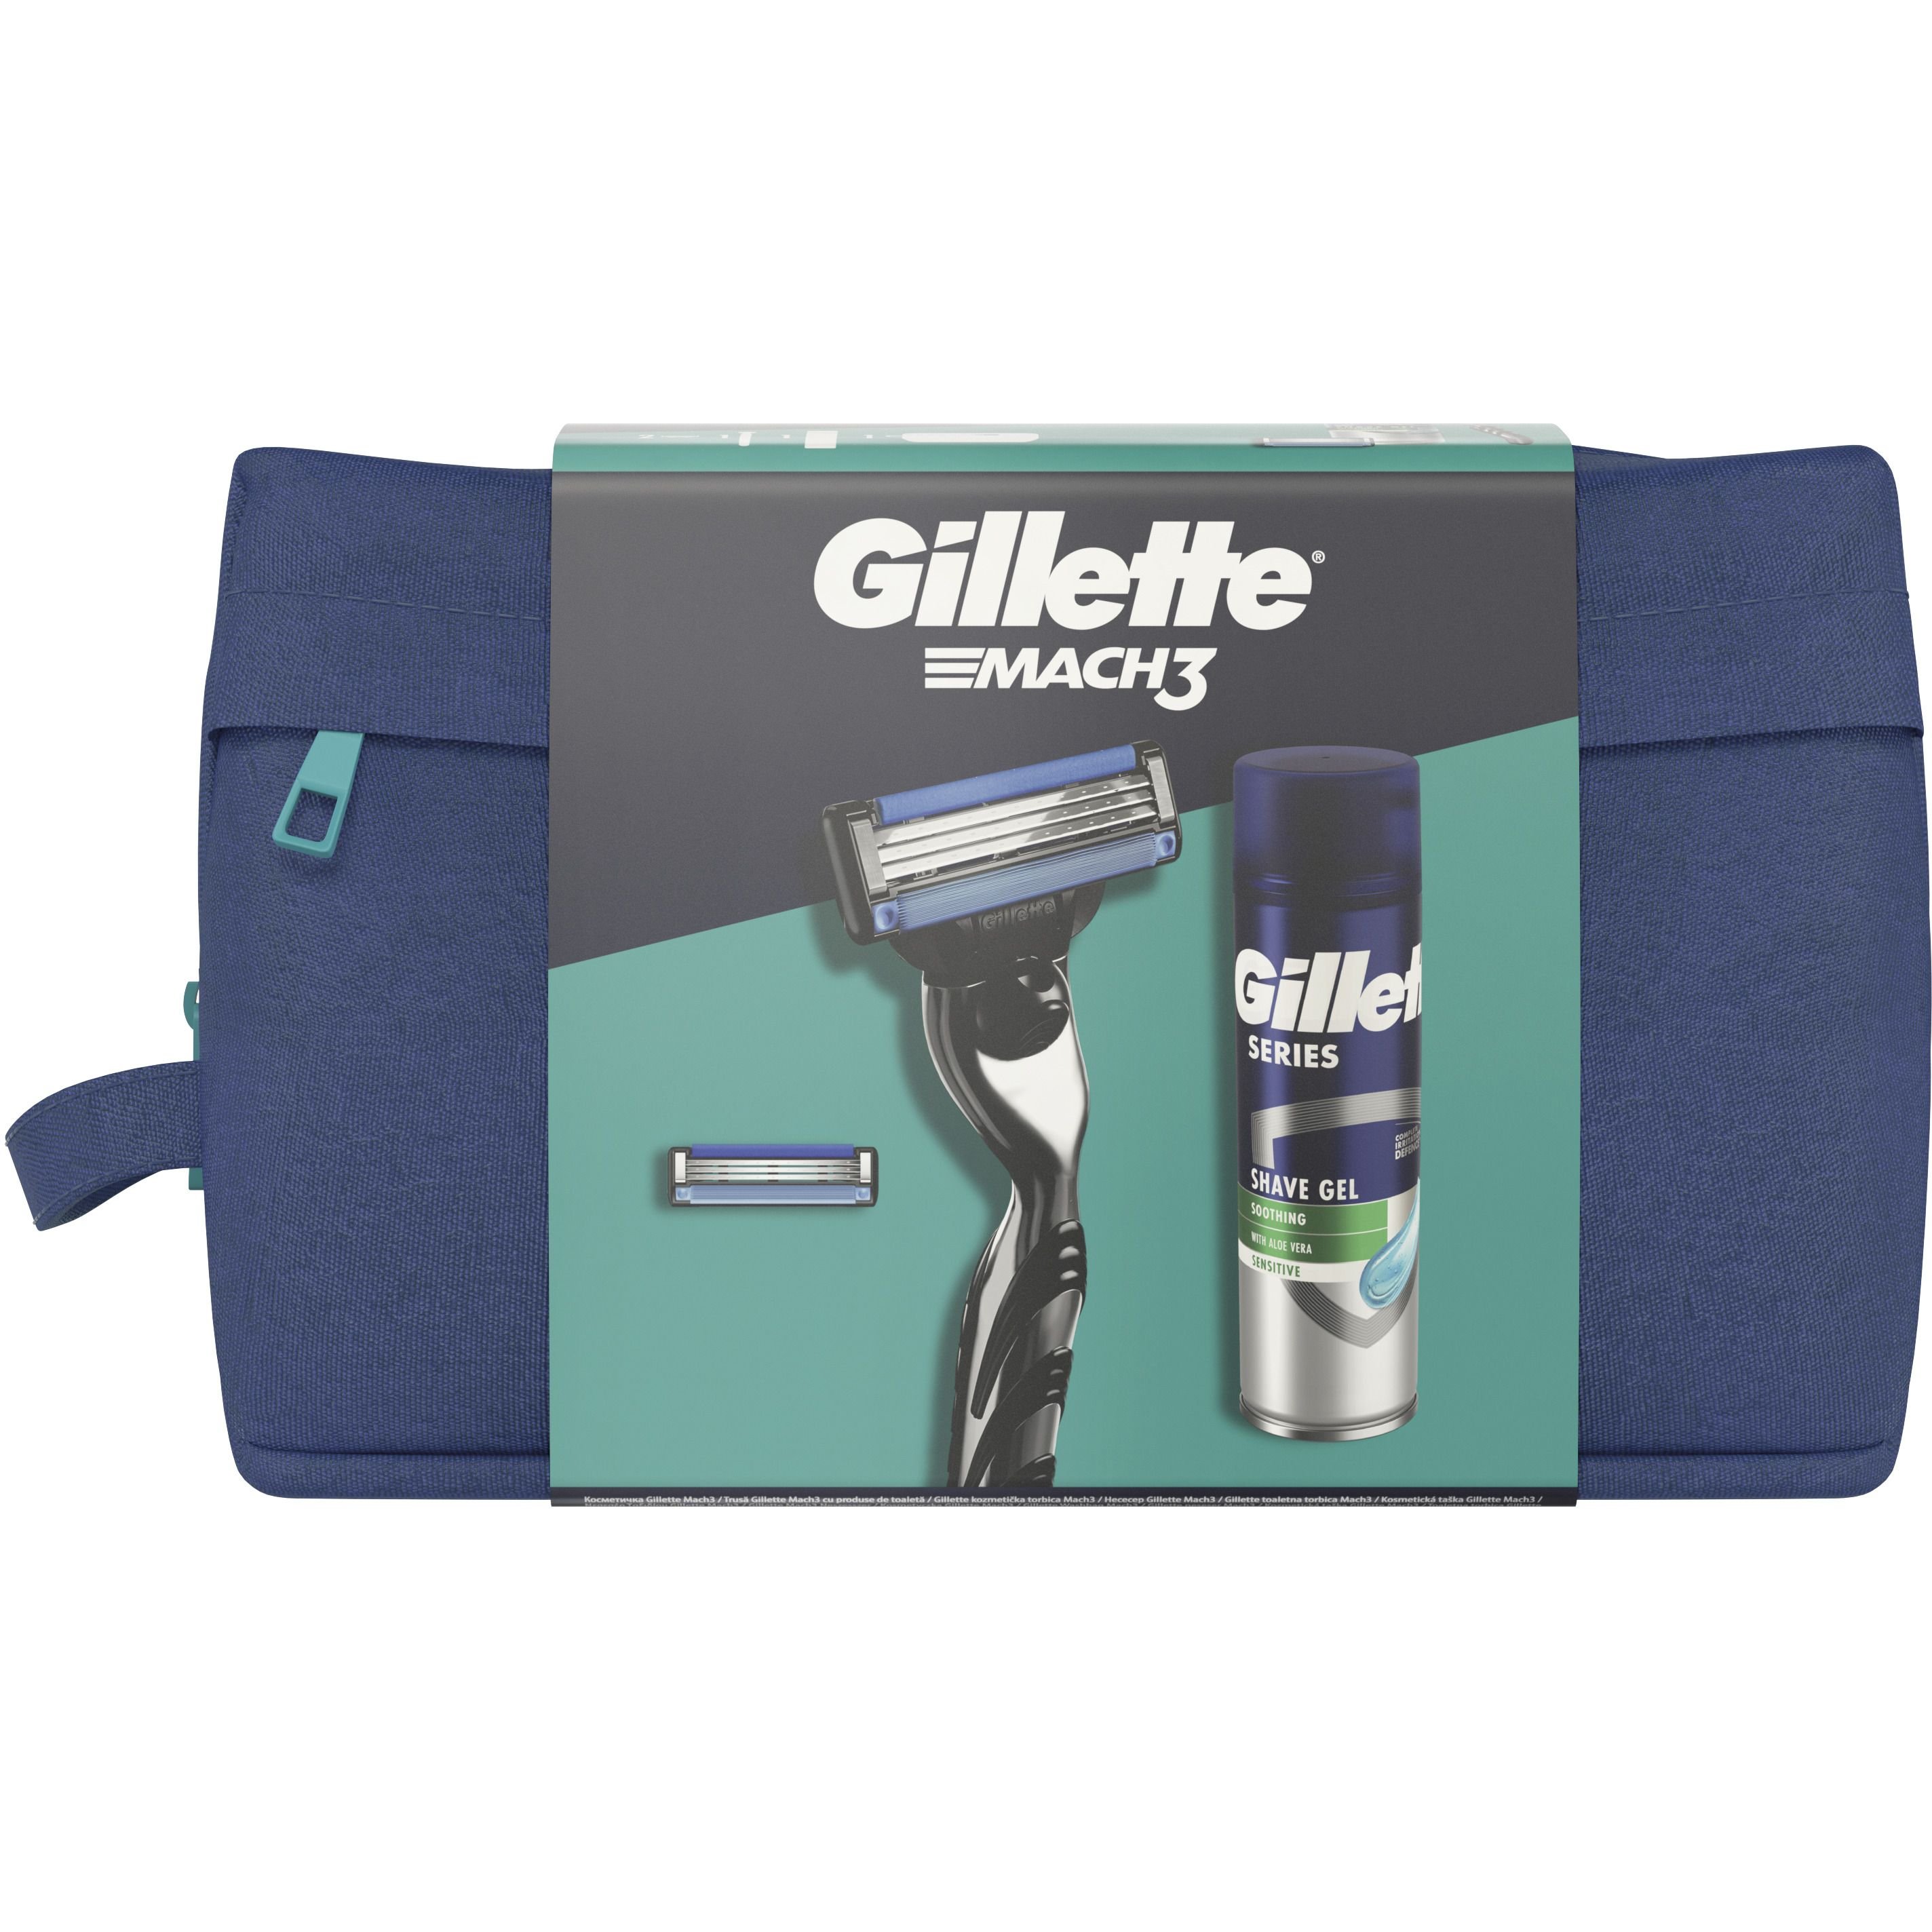 Подарочный набор для мужчин Gillette Mach3: бритва + сменные катриджи для бритья 2 шт. + гель для бритья + косметичка - фото 2